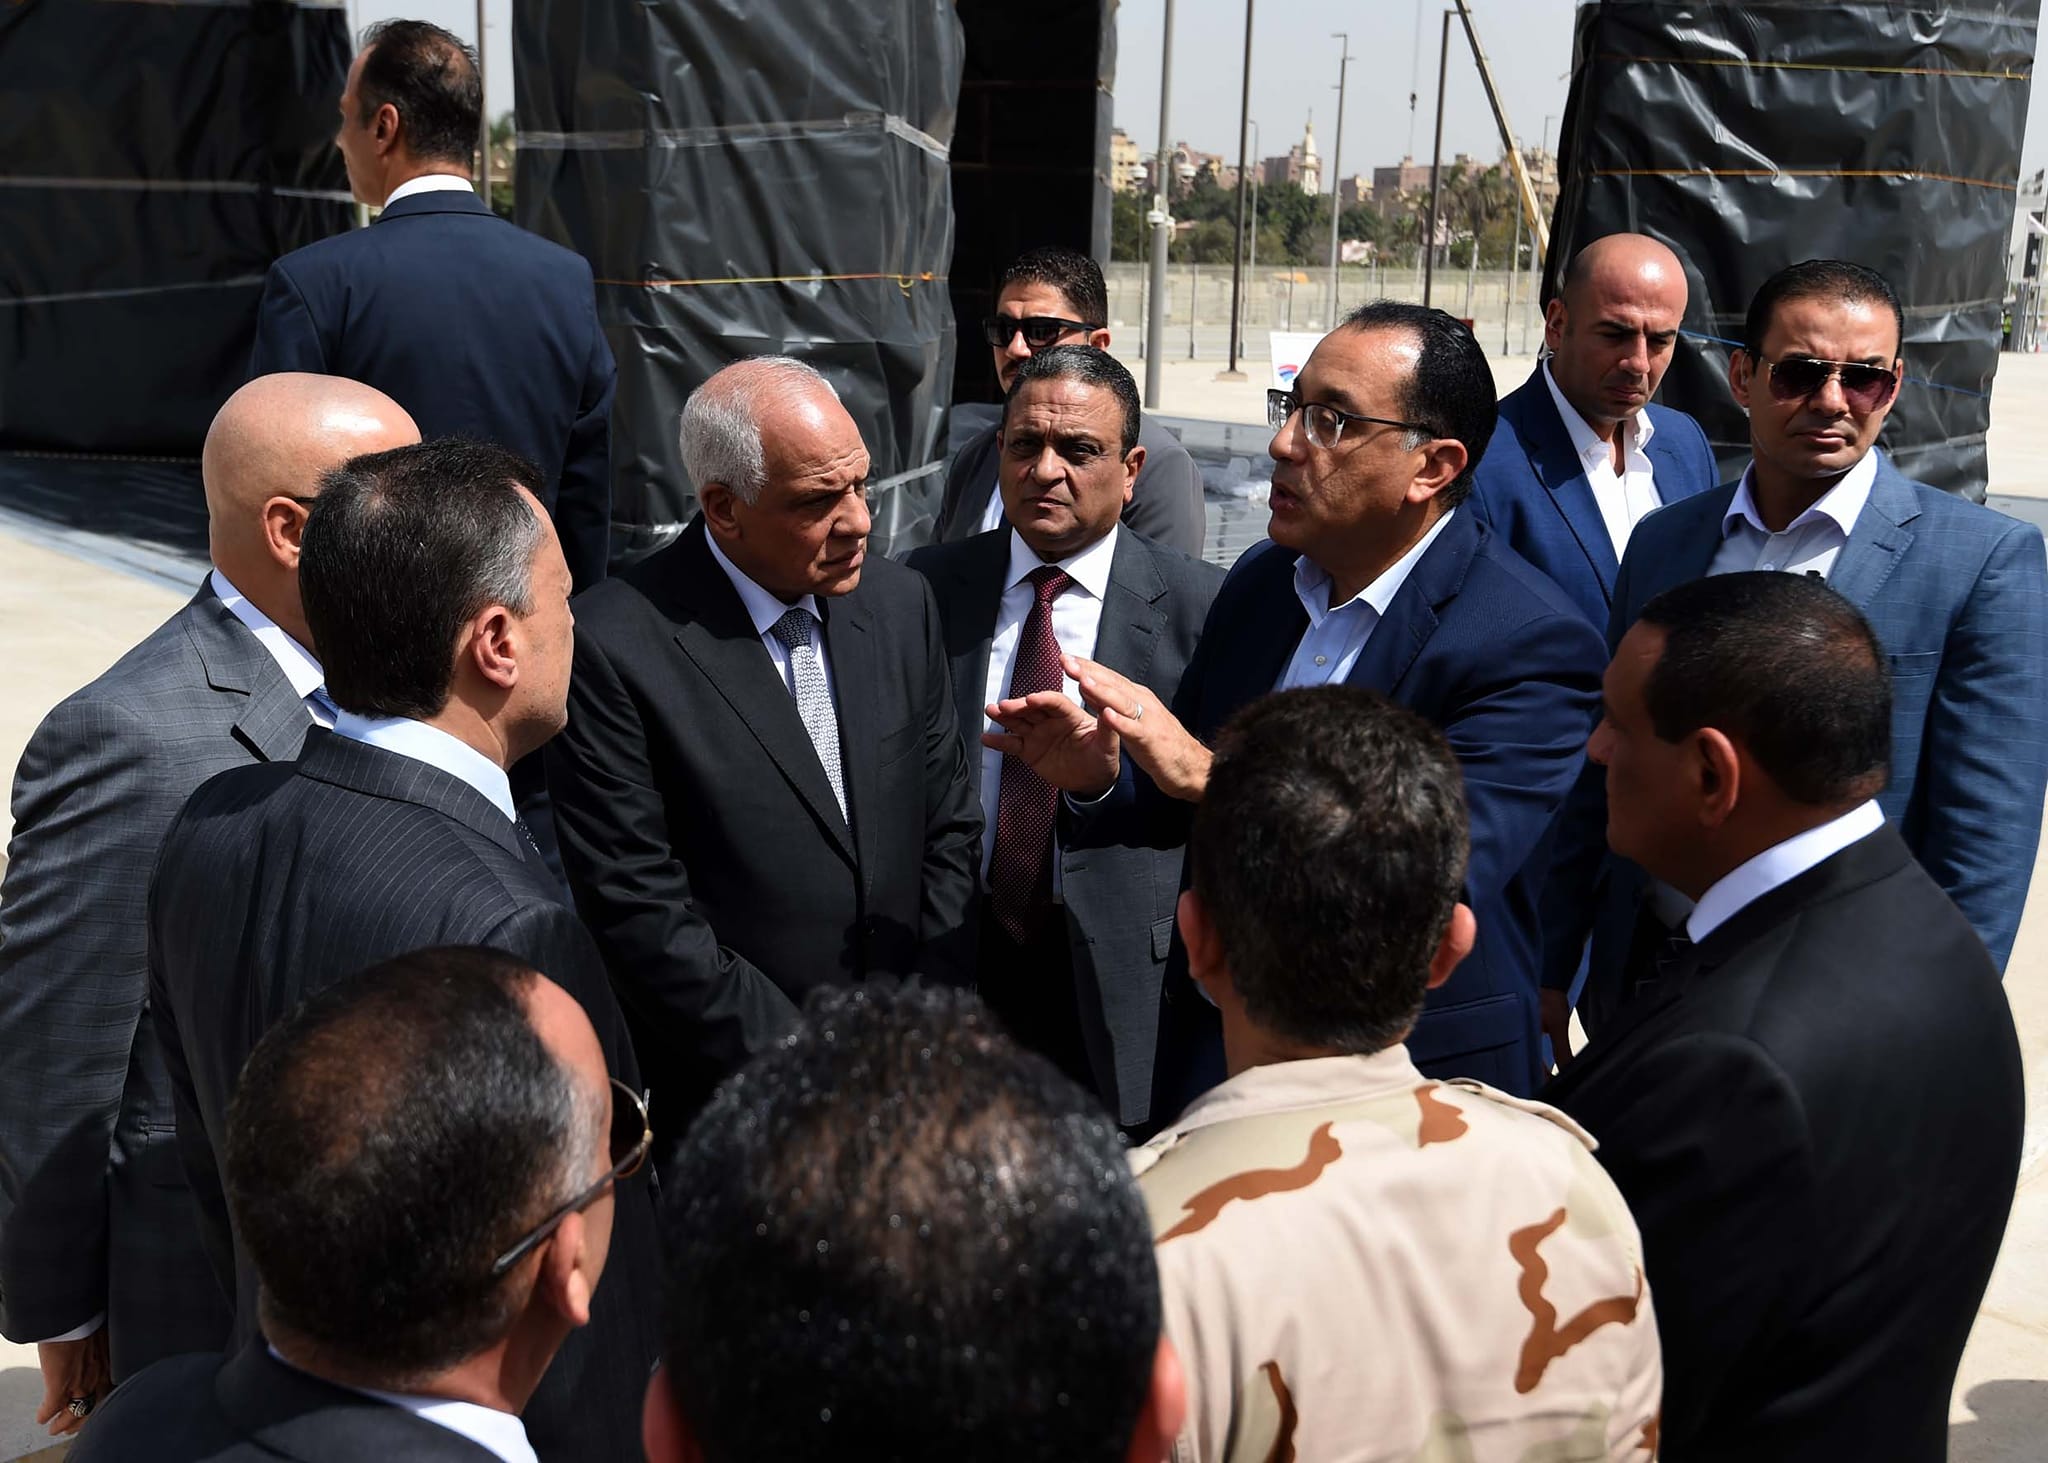 رئيس الوزراء يتجول بالمتحف المصري الكبير لمتابعة آخر مستجدات الأعمال